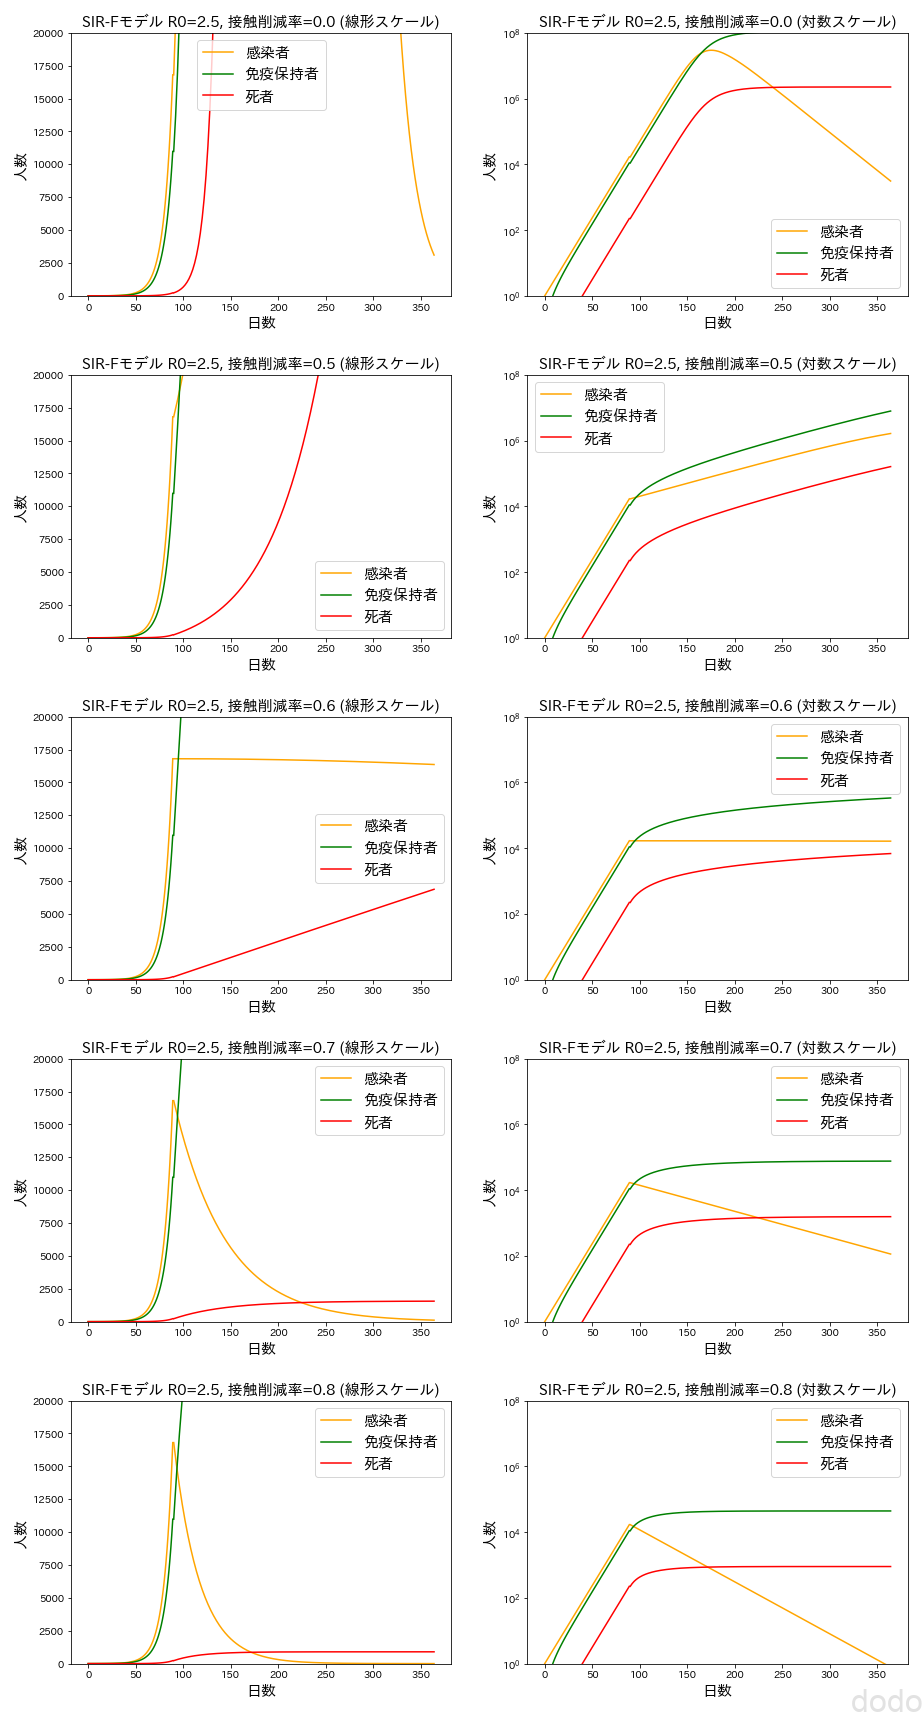 SIR-Fモデル（日本で接触率を減らした場合のイメージ）